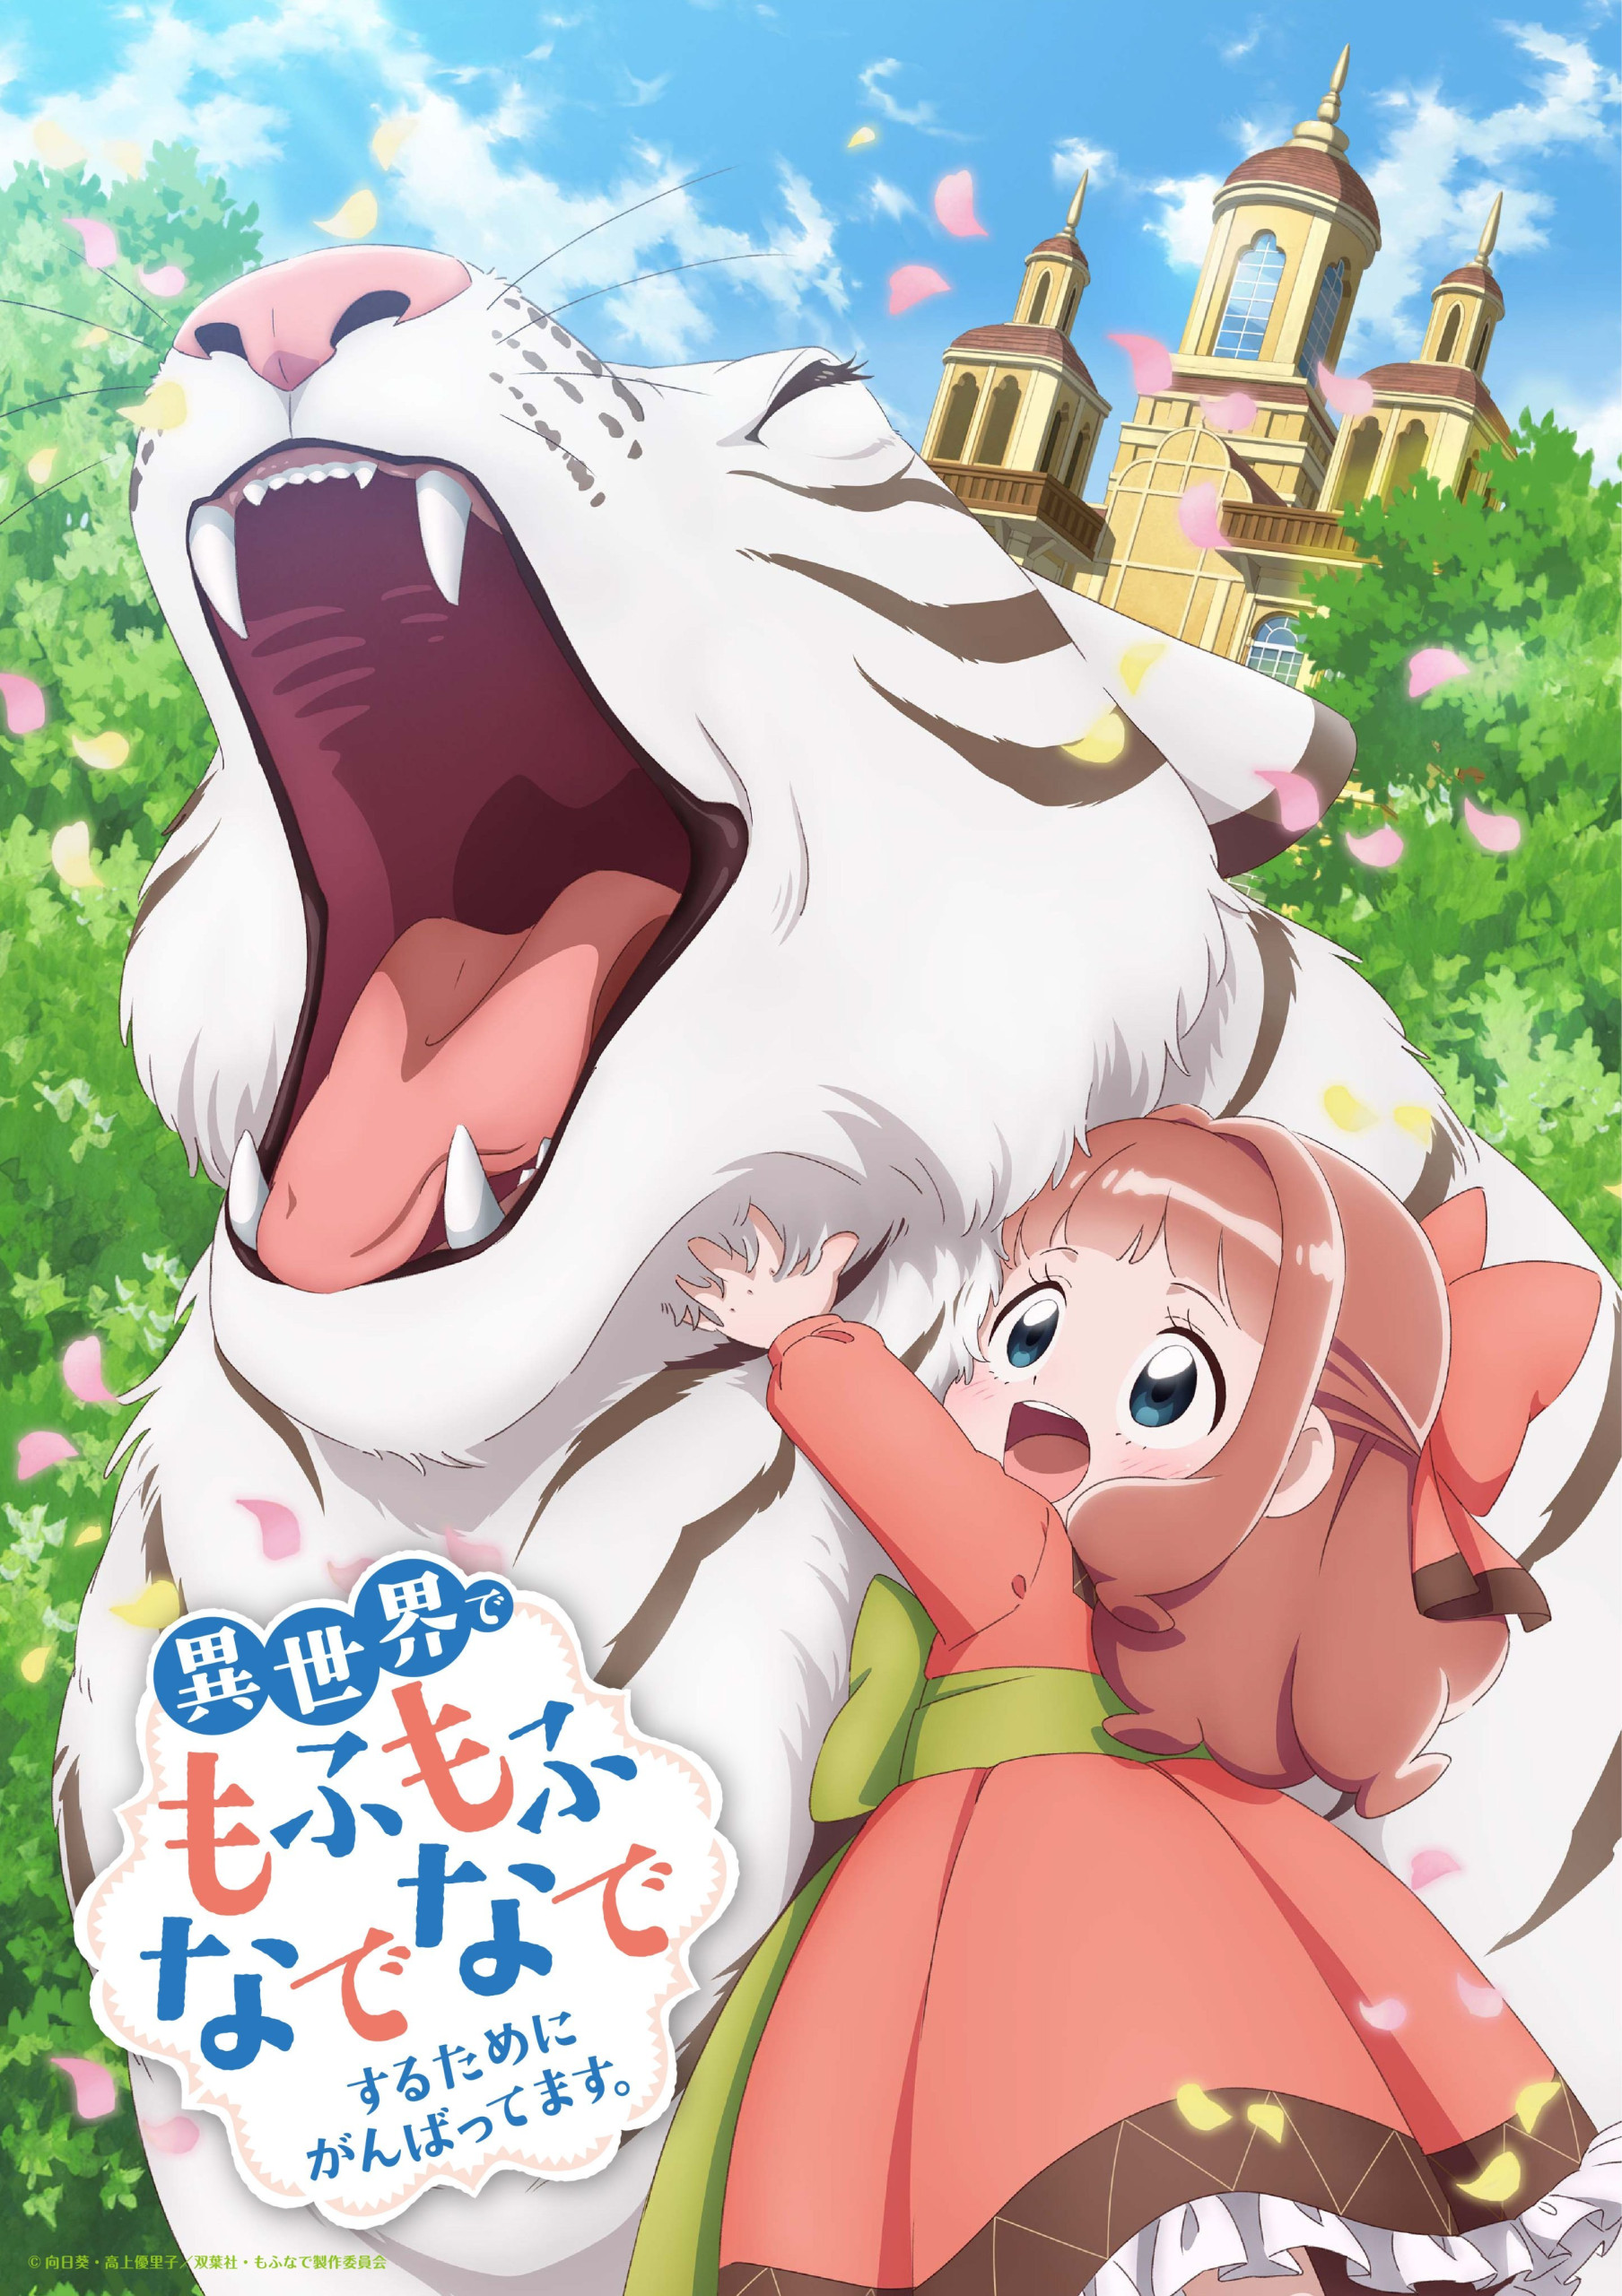 Fluffy Paradise isekai anime info